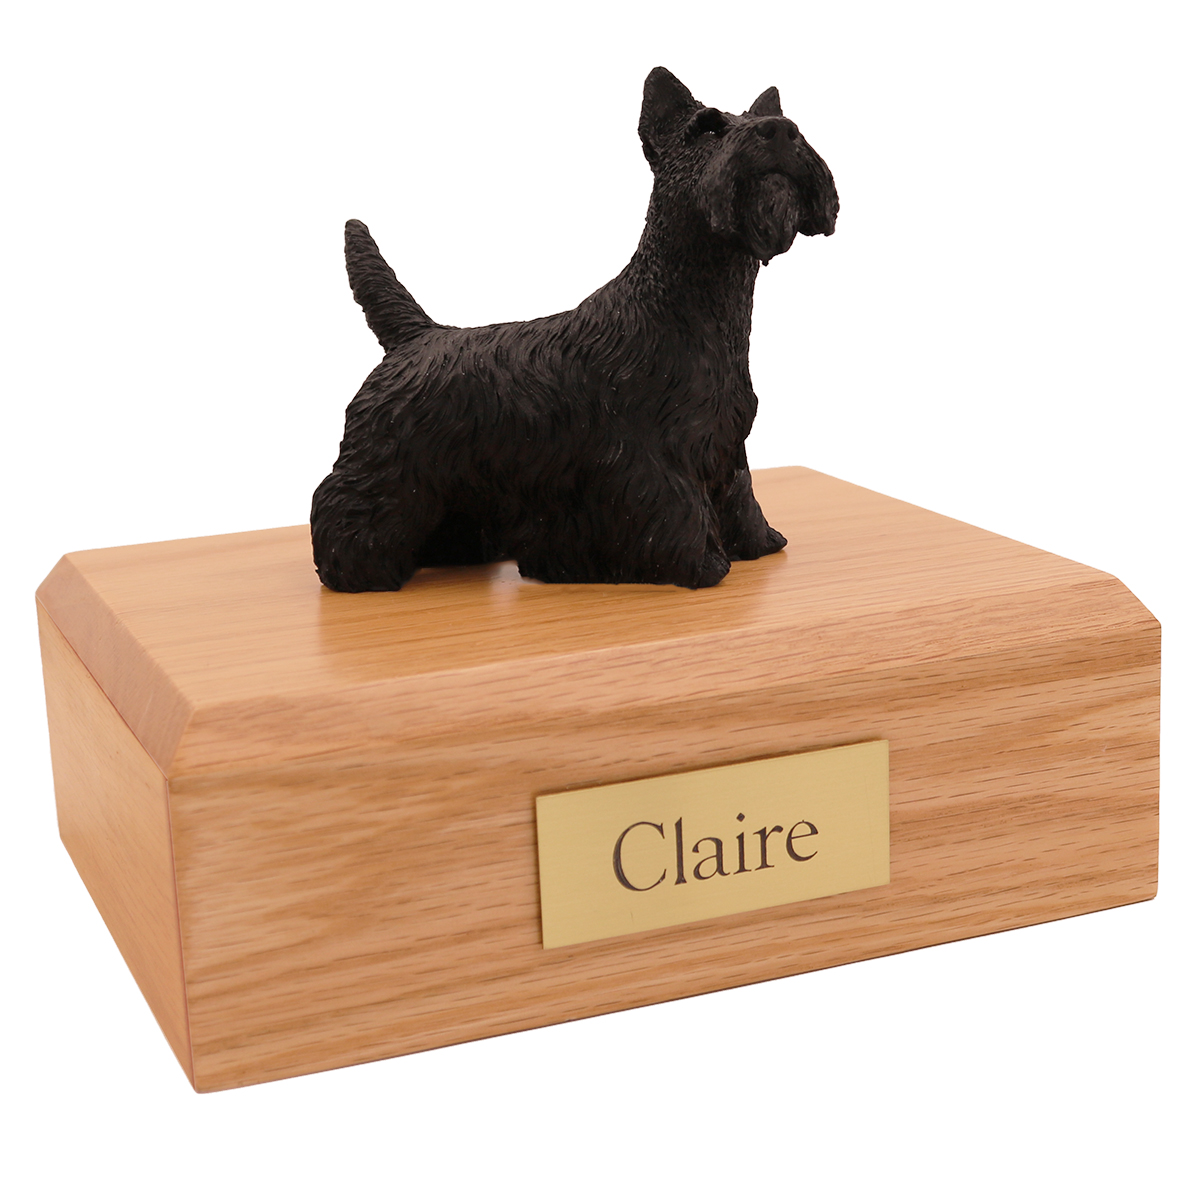 Dog, Scottish Terrier Standing - Figurine Urn